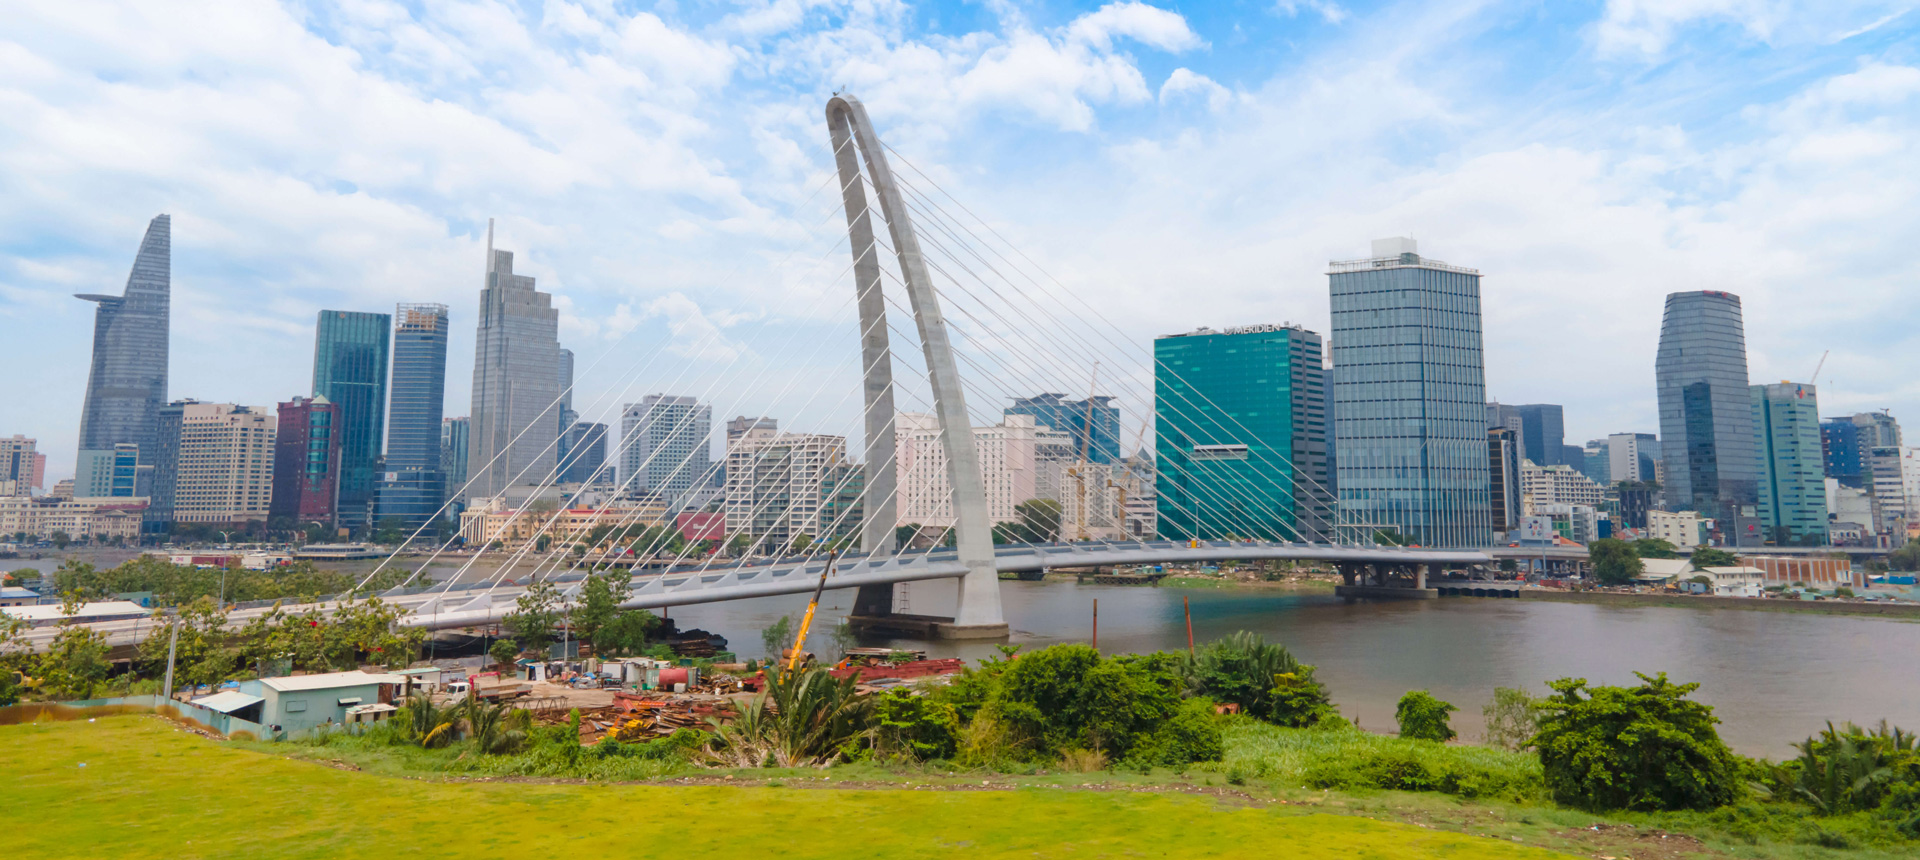 Cầu Thủ Thiêm 2 không chỉ là điểm nhấn kiến trúc cho cảnh quan sông Sài Gòn mà còn kết nối trung tâm Quận 1 với Khu đô thị mới Thủ Thiêm. 